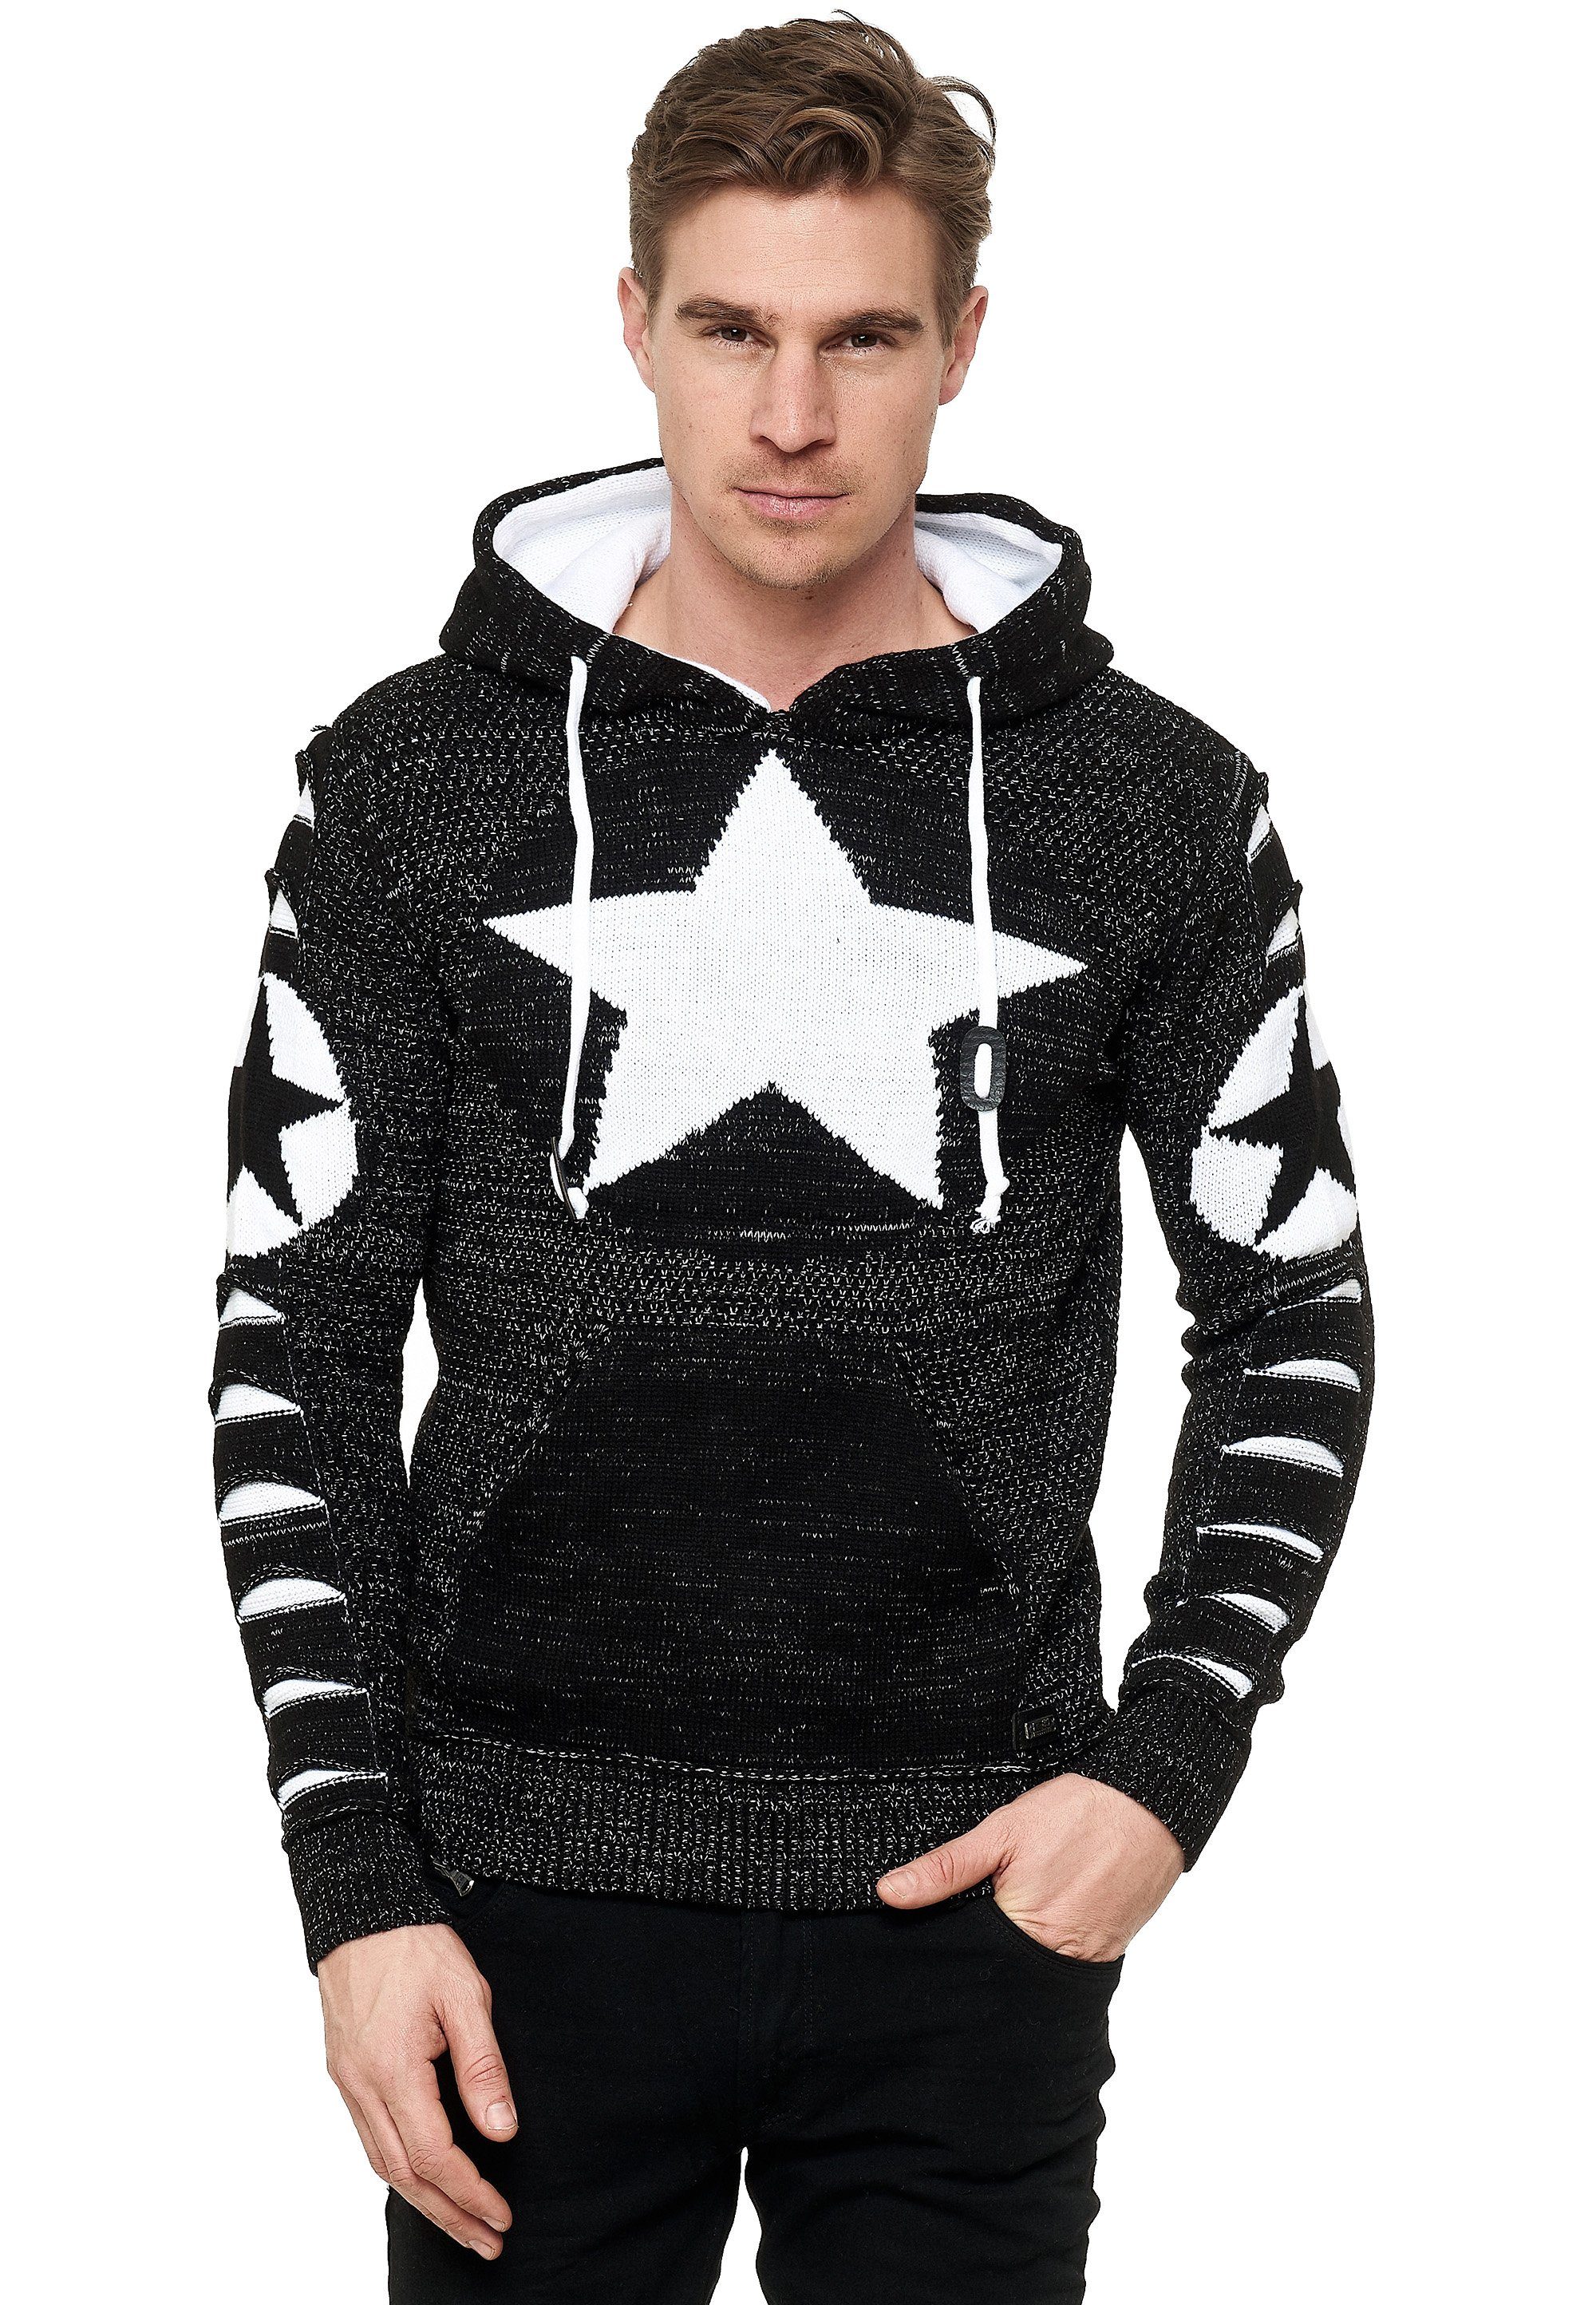 günstige Rabatte Rusty Neal Kapuzensweatshirt großem Stern-Design mit schwarz-weiß